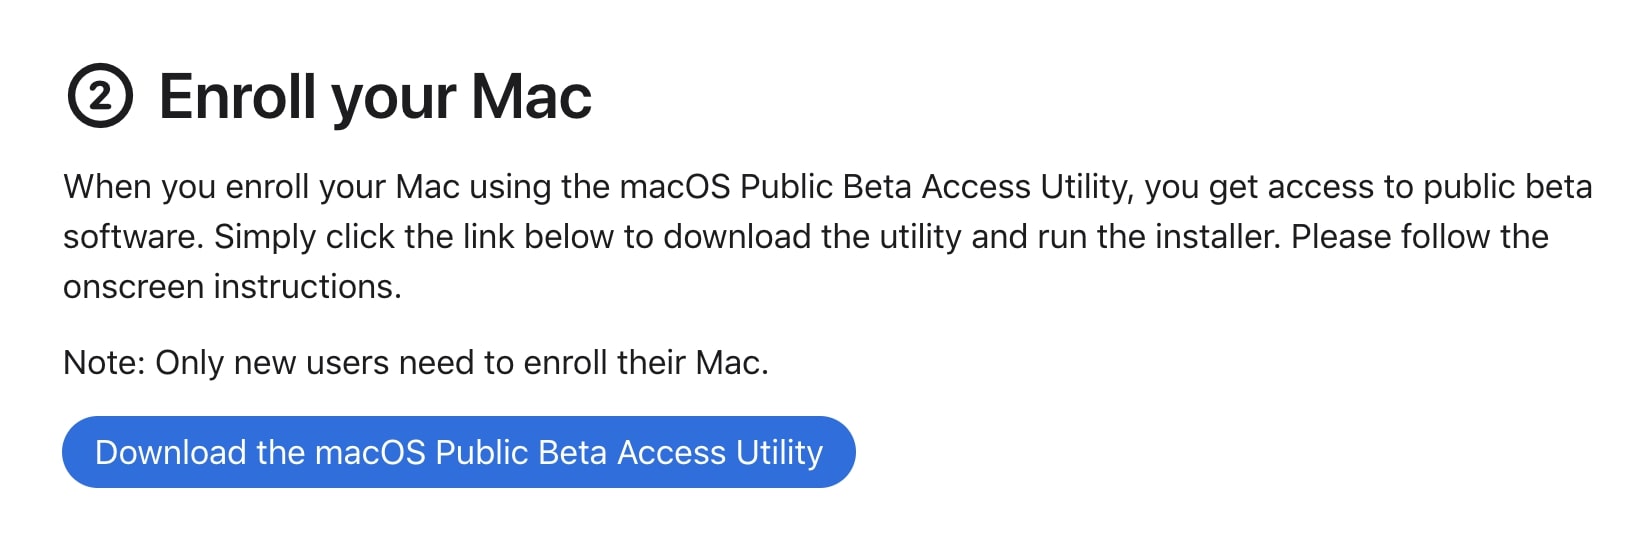 Enroll your Mac